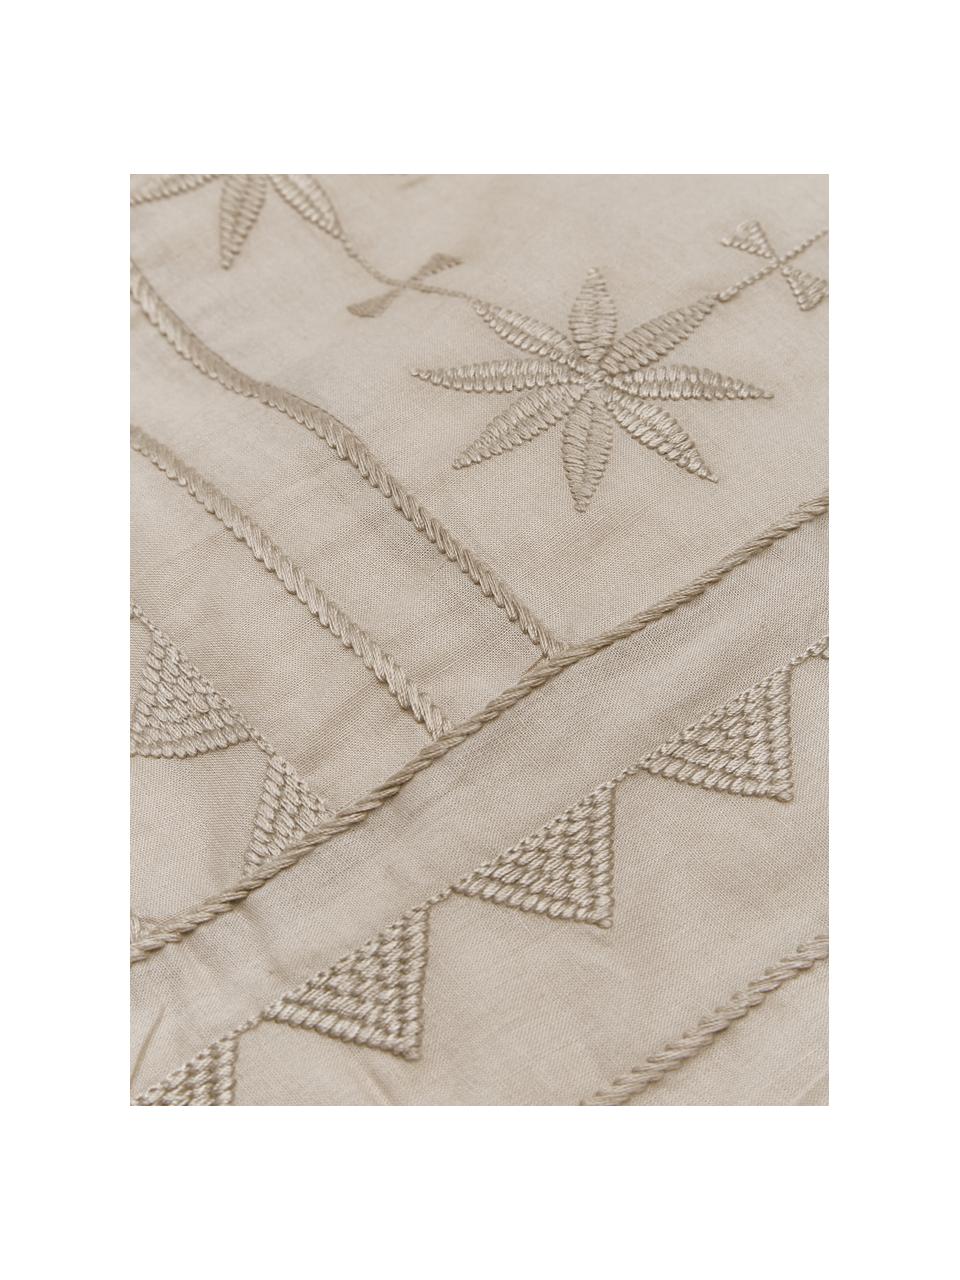 Pościel z bawełny z haftem Elaine, Taupe, we wzór, 135 x 200 cm + 1 poduszka 80 x 80 cm